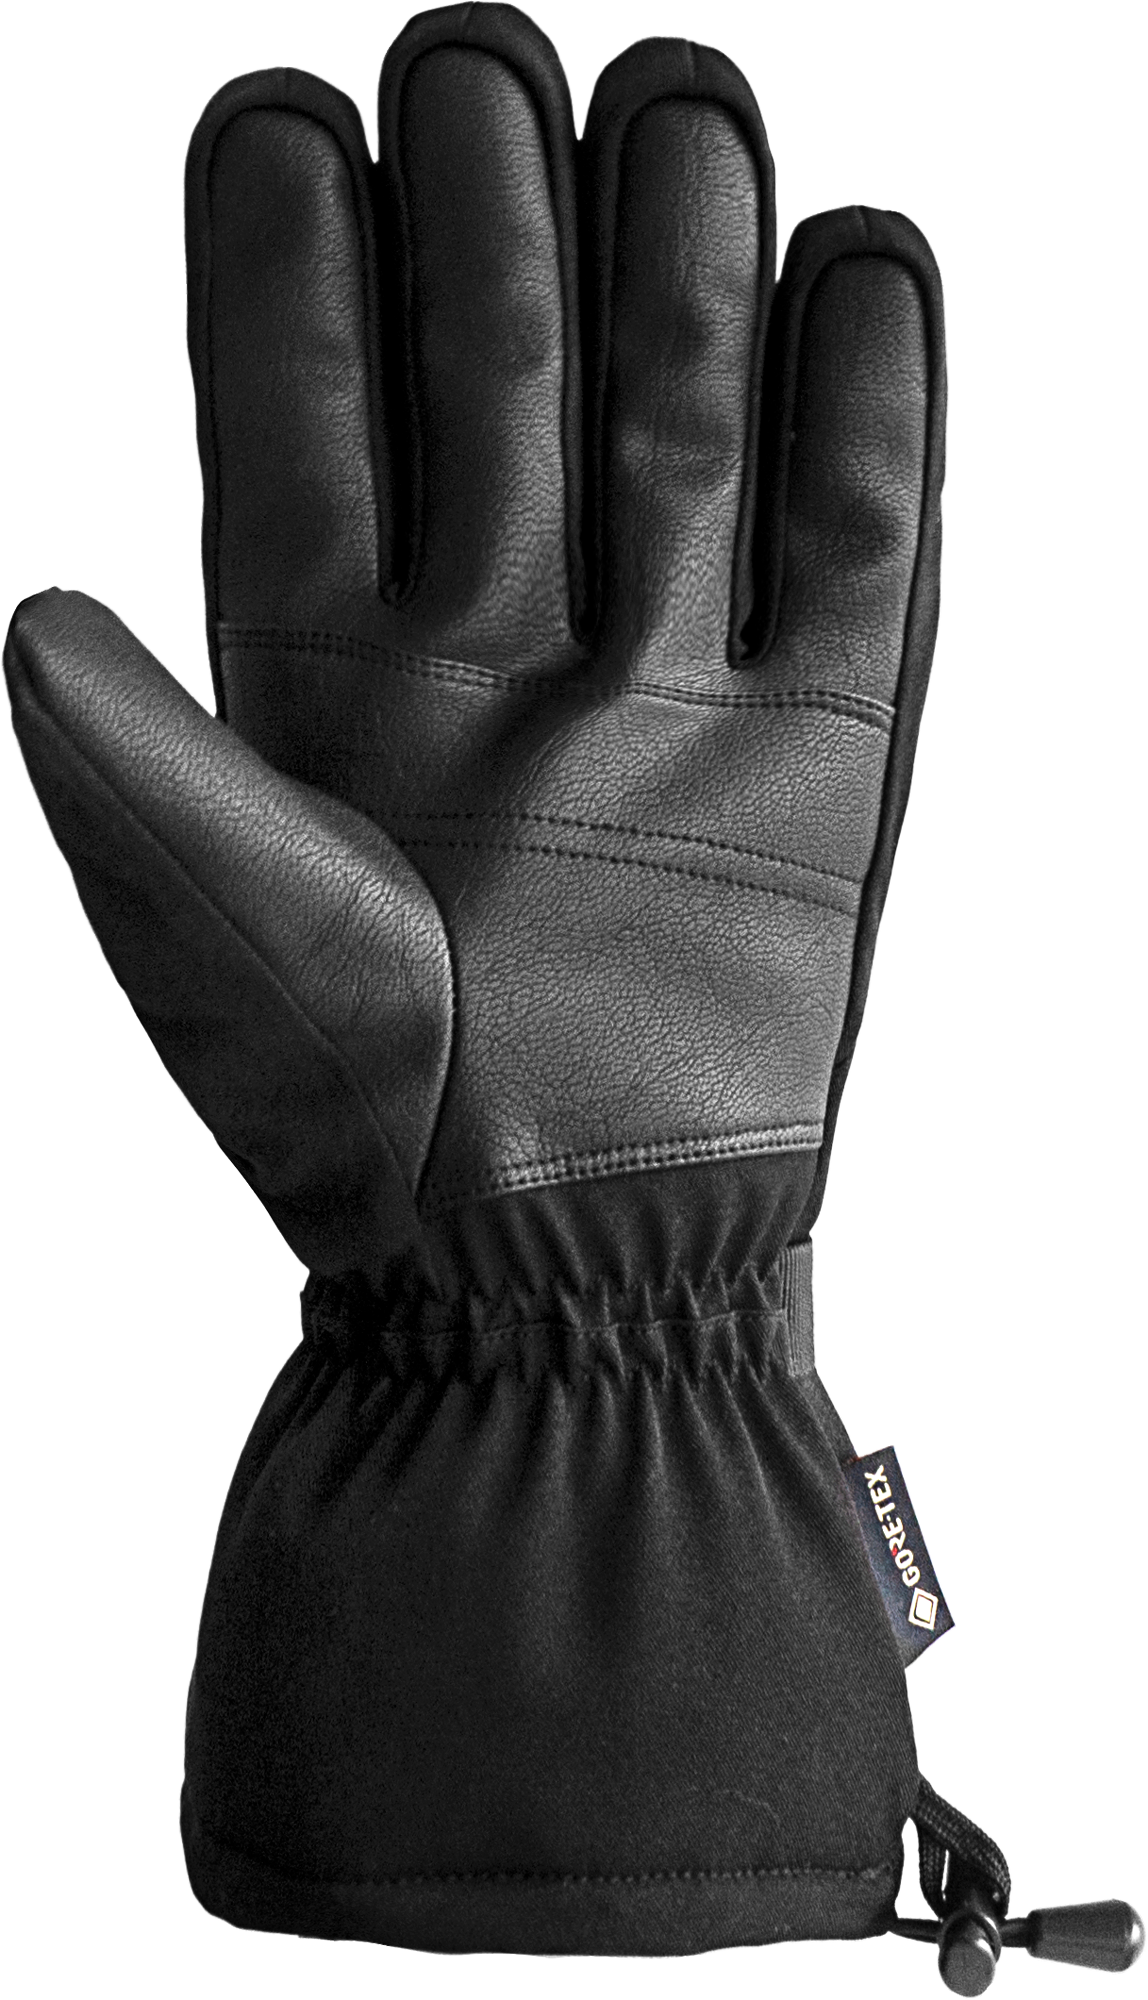 Reusch Winter Glove Warm GORE-TEX | Handschuhe